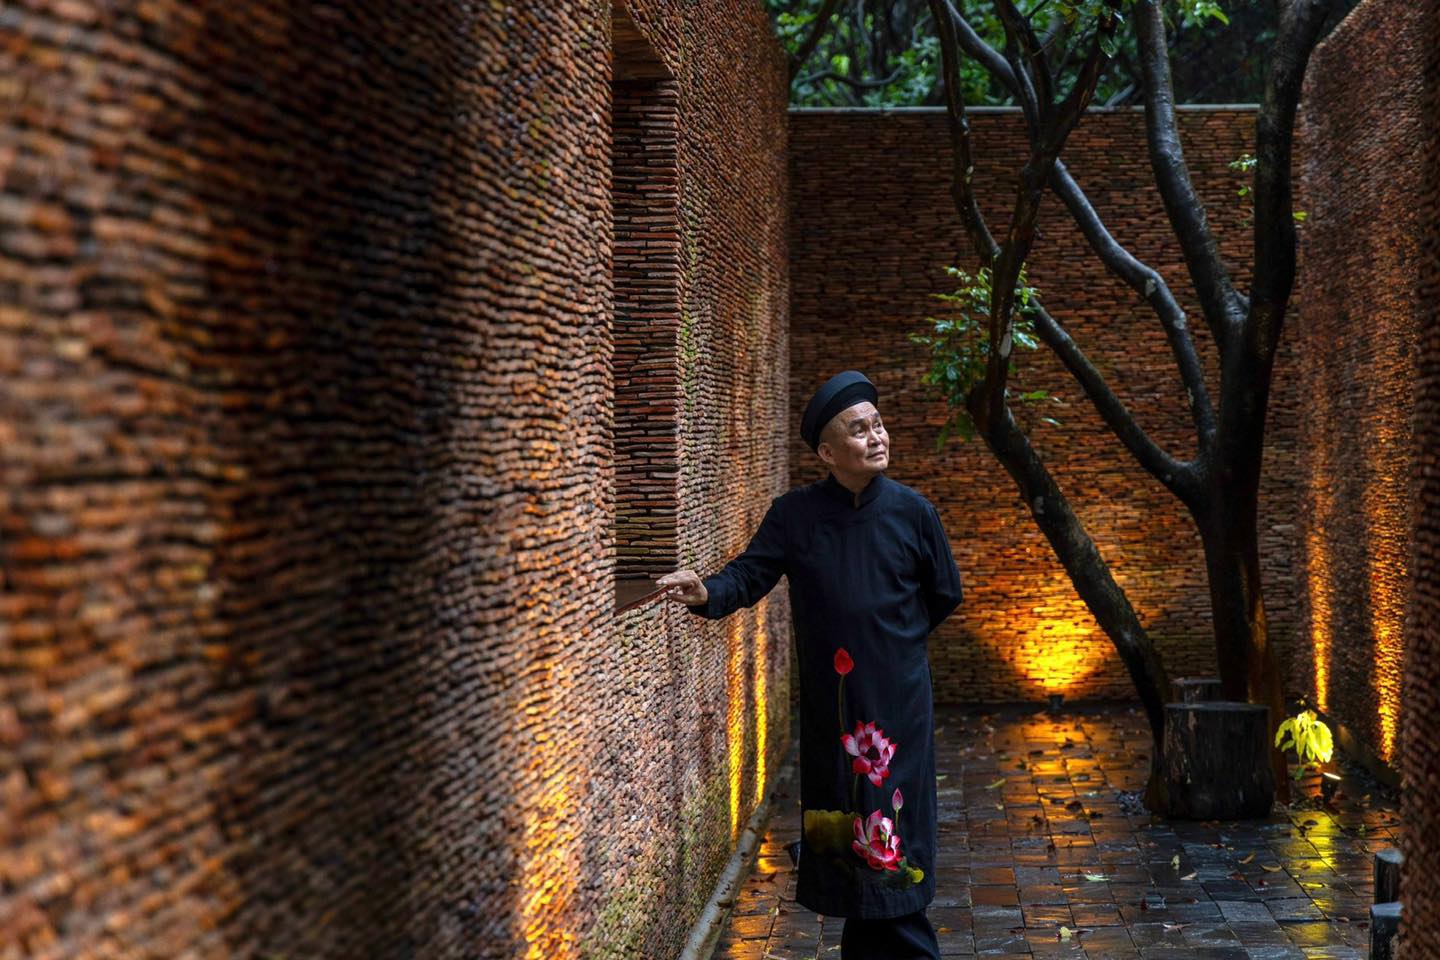 Bảo tàng Đạo Mẫu của nghệ sĩ Xuân Hinh xuất hiện trên tạp chí kiến trúc nổi tiếng: Nét đẹp văn hóa dân gian Việt Nam thêm một lần tỏa sáng - Ảnh 2.